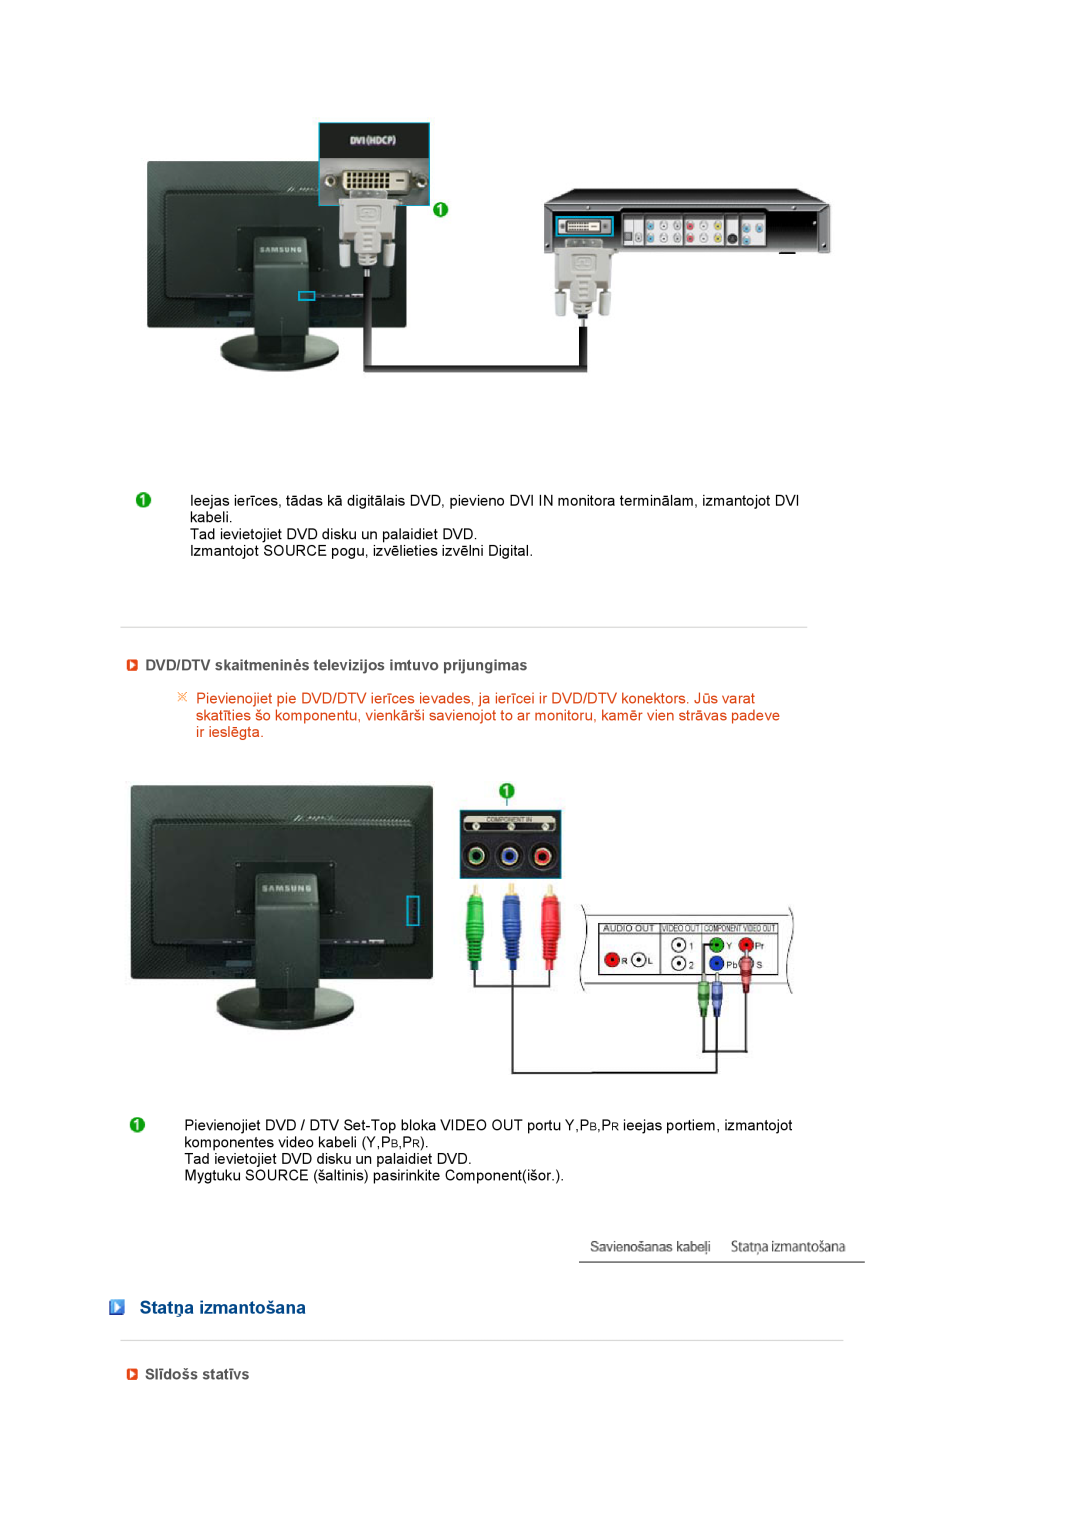 Samsung LS27HUBCB/EDC manual Statņa izmantošana, DVD/DTV skaitmeninės televizijos imtuvo prijungimas, Slīdošs statīvs 